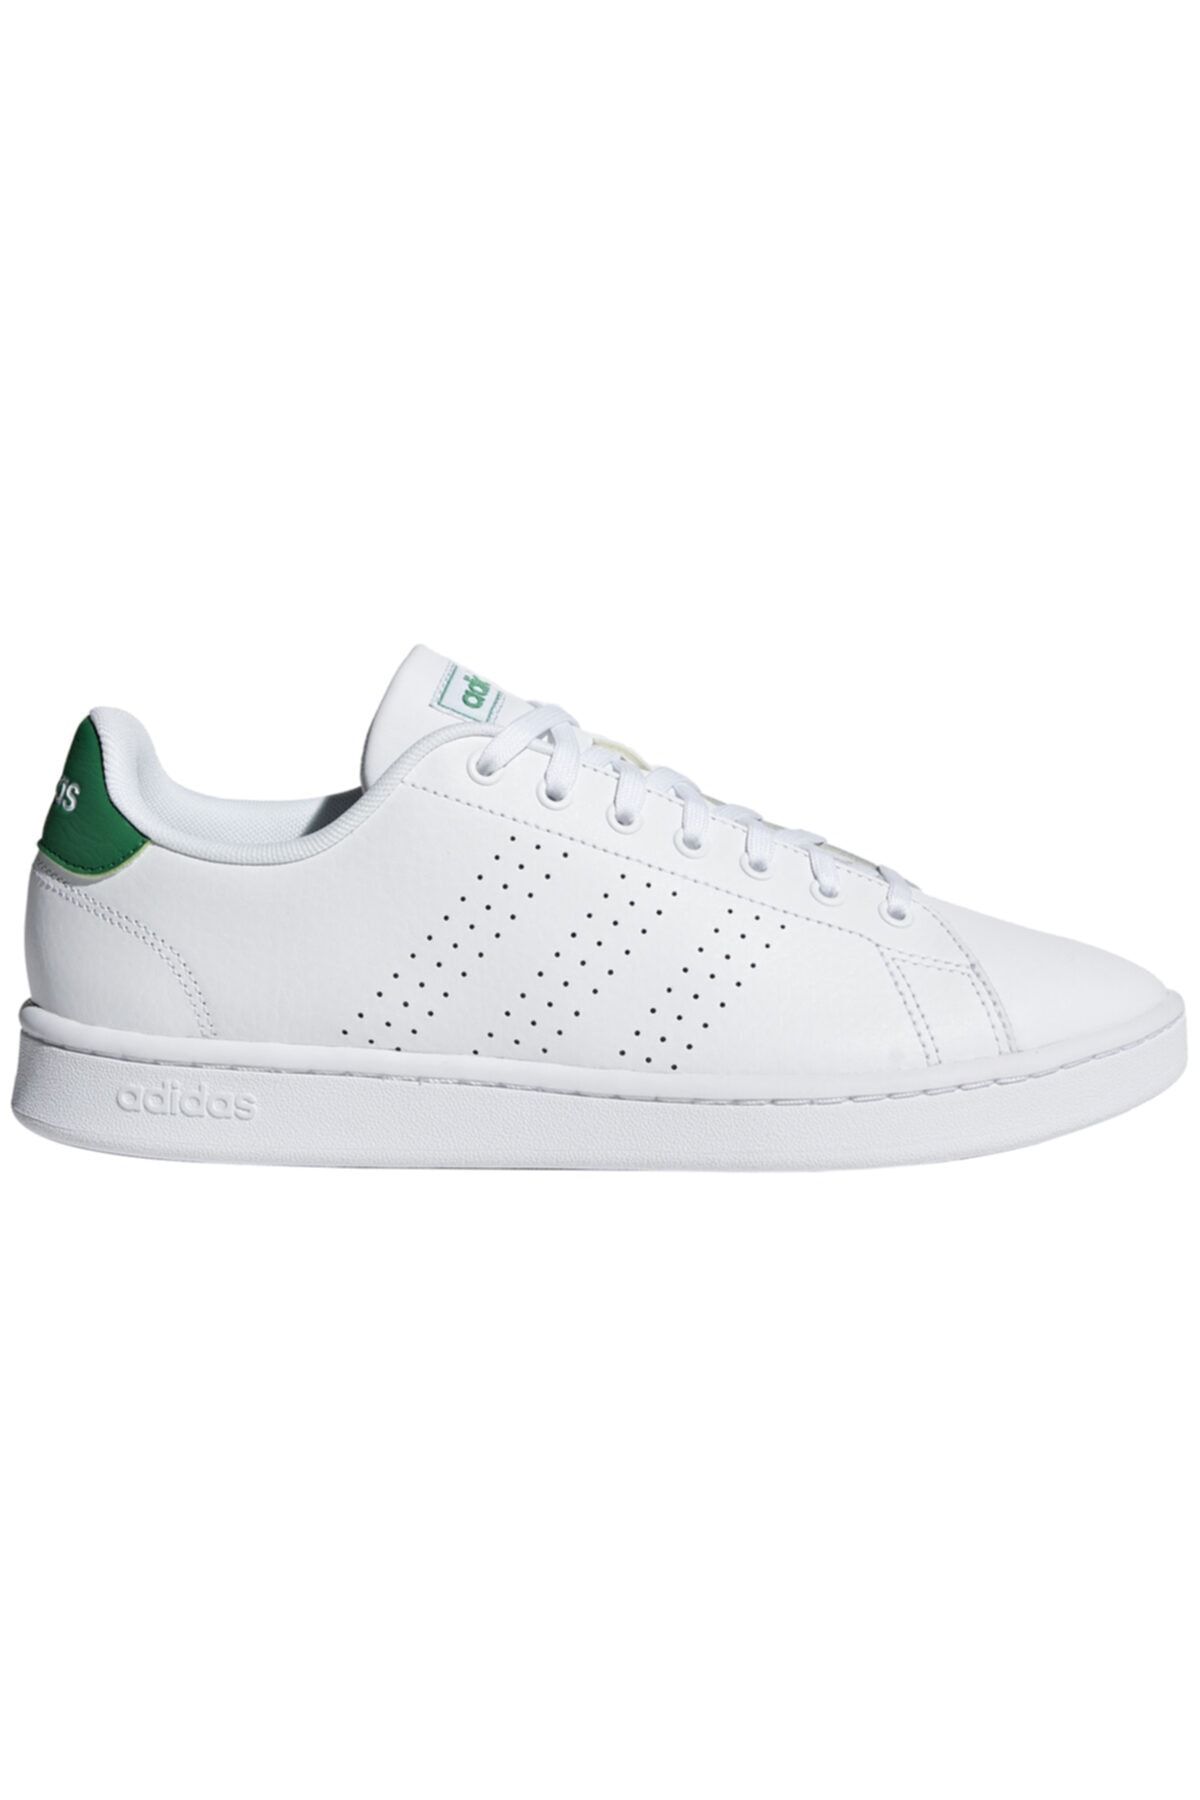 adidas F36424 Beyaz Erkek Sneaker Ayakkabı 100403641